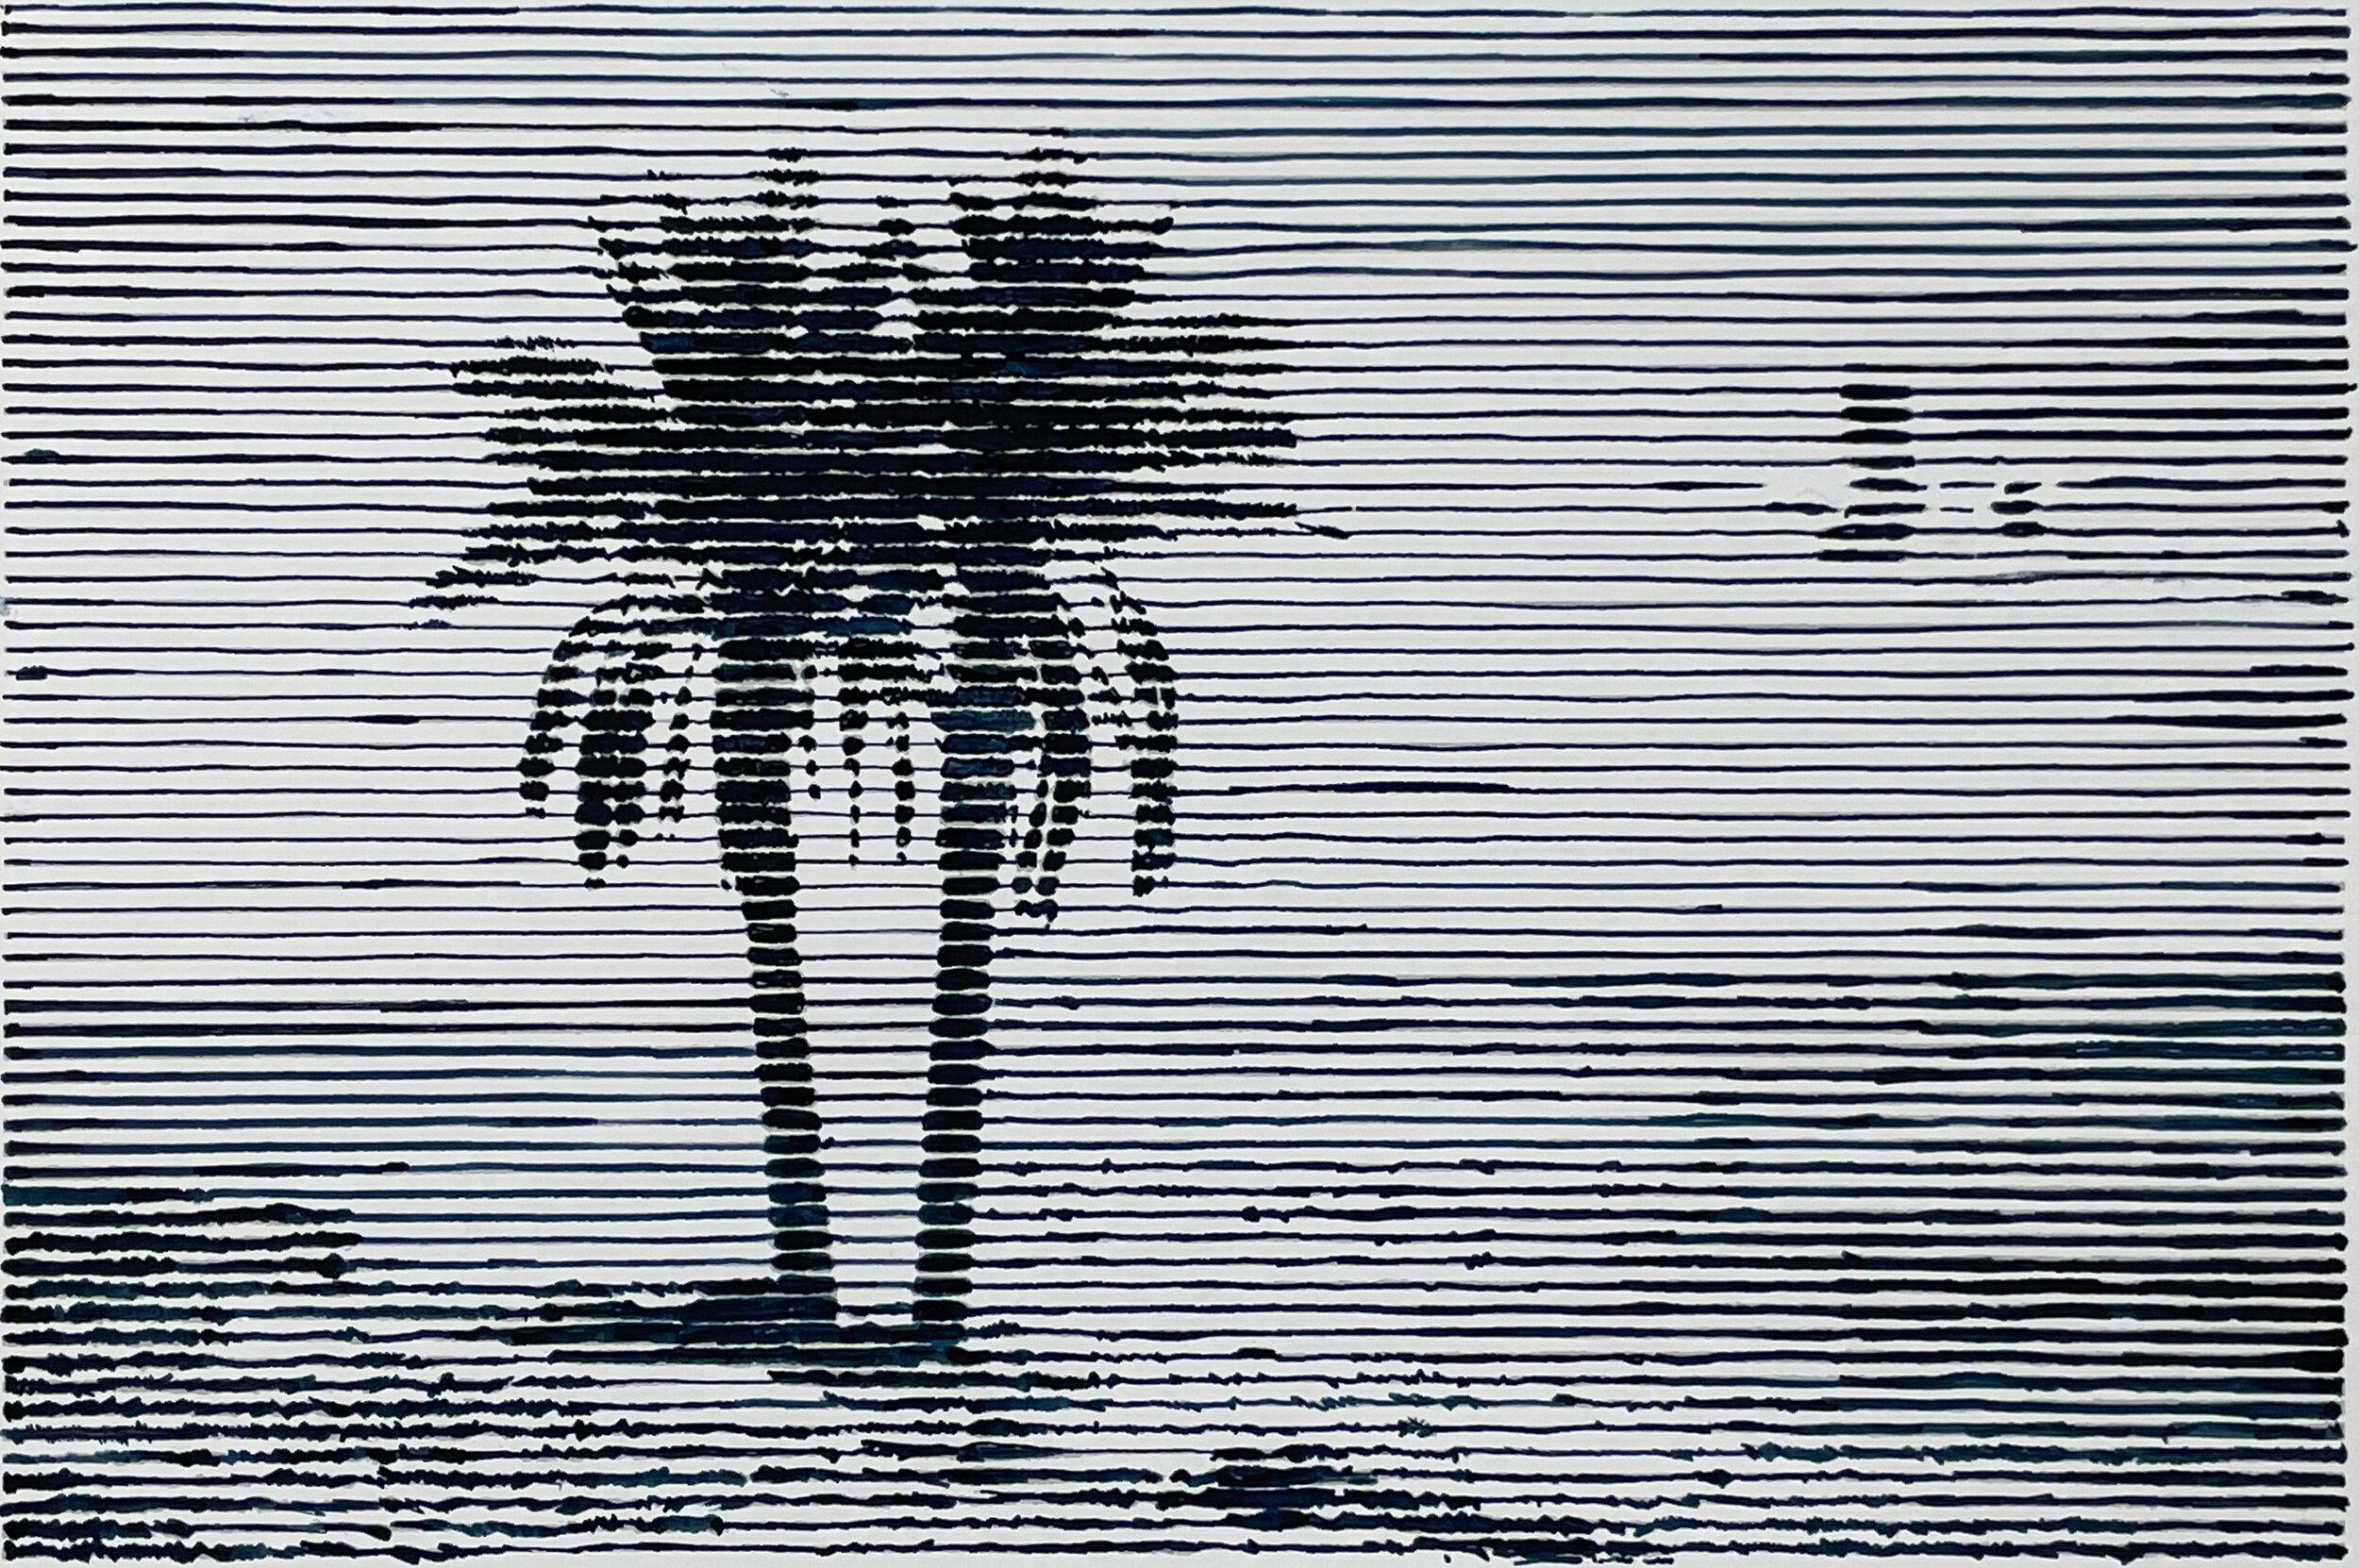 Still-Life Painting Charles Buckley - Mirage/Oasis, peinture en noir et blanc d'une plage avec palmiers